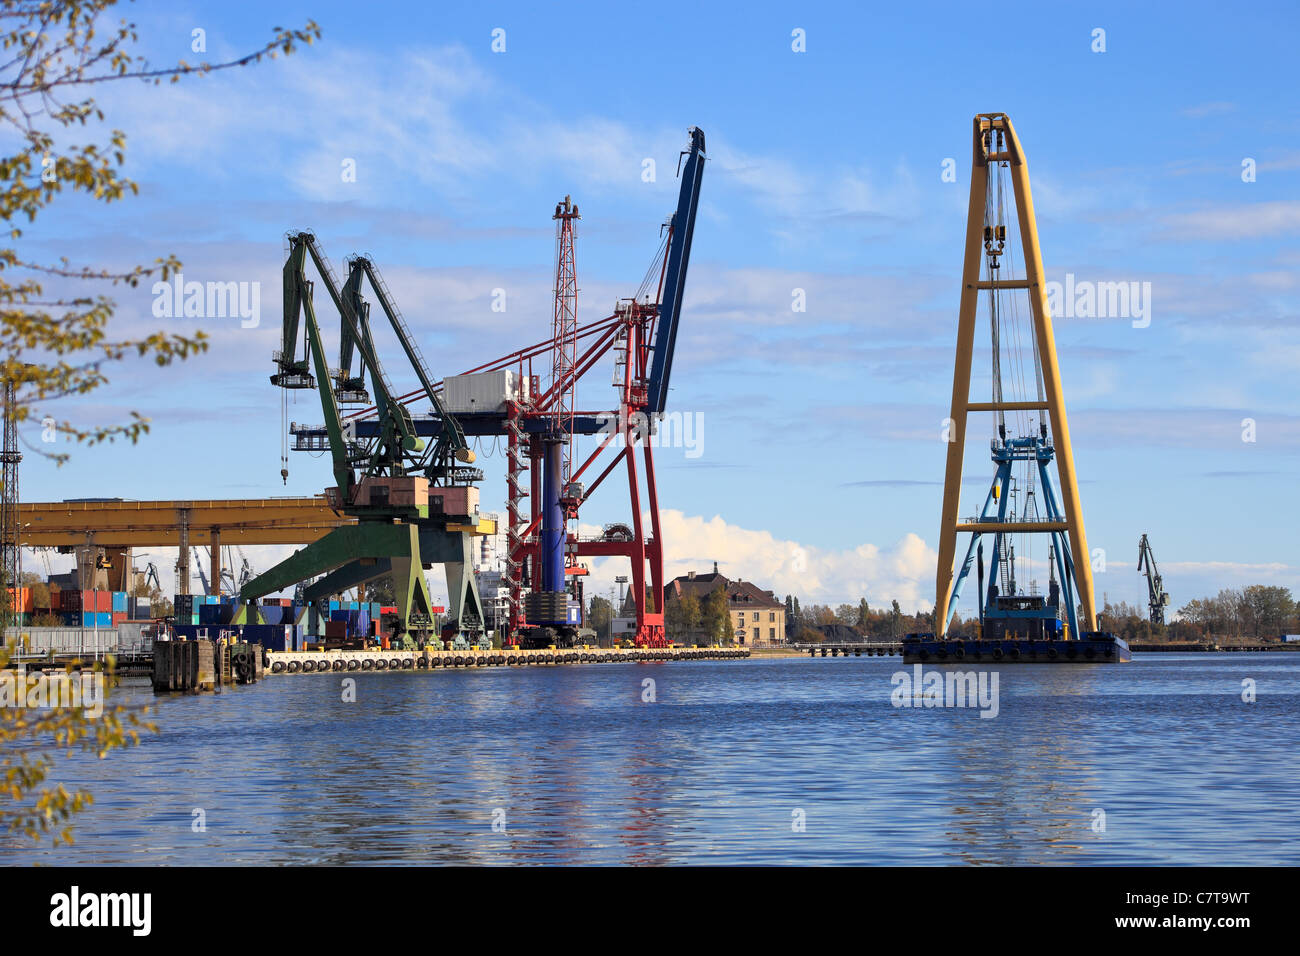 Le levage lourd grue flottante dans le port de Gdansk, Pologne. Banque D'Images